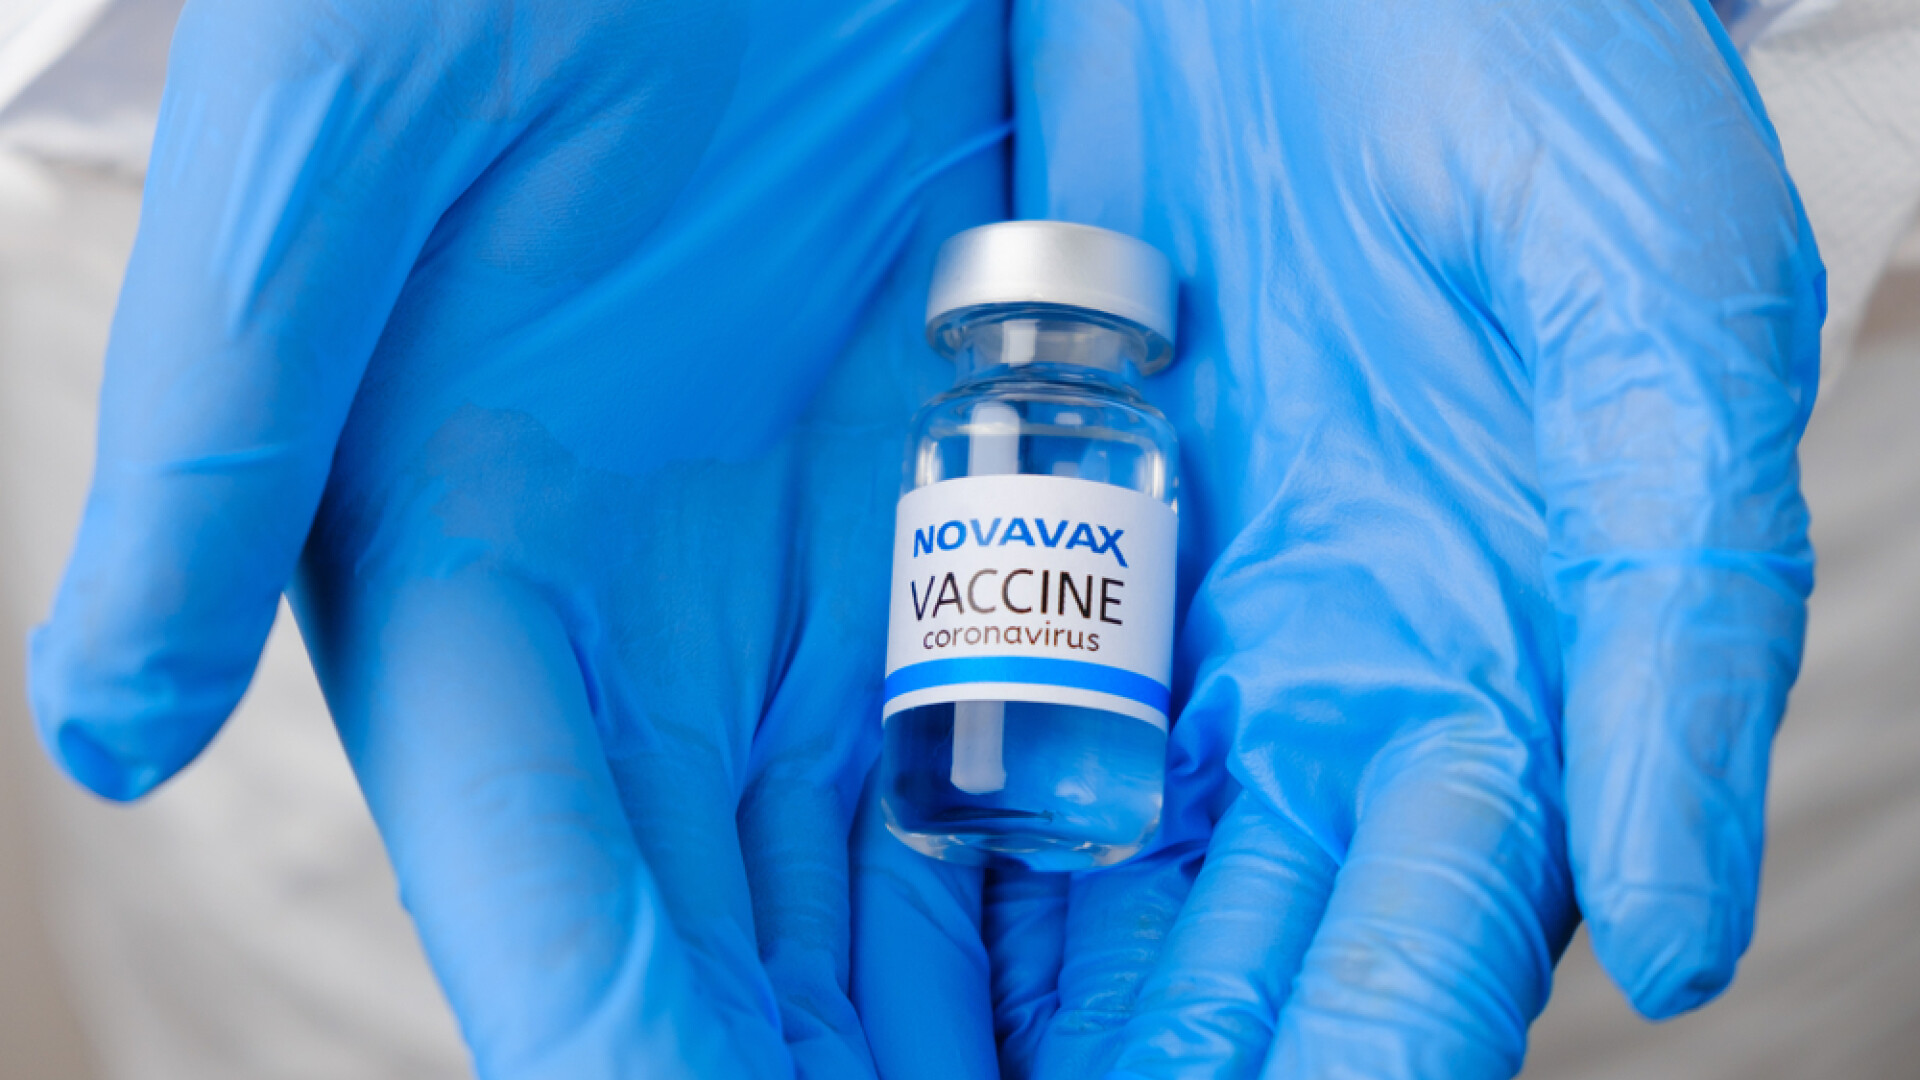 Risc de miocardită după vaccinarea cu Novavax, transmite FDA. Autoritatea se întrunește pentru autorizare pe piața din SUA